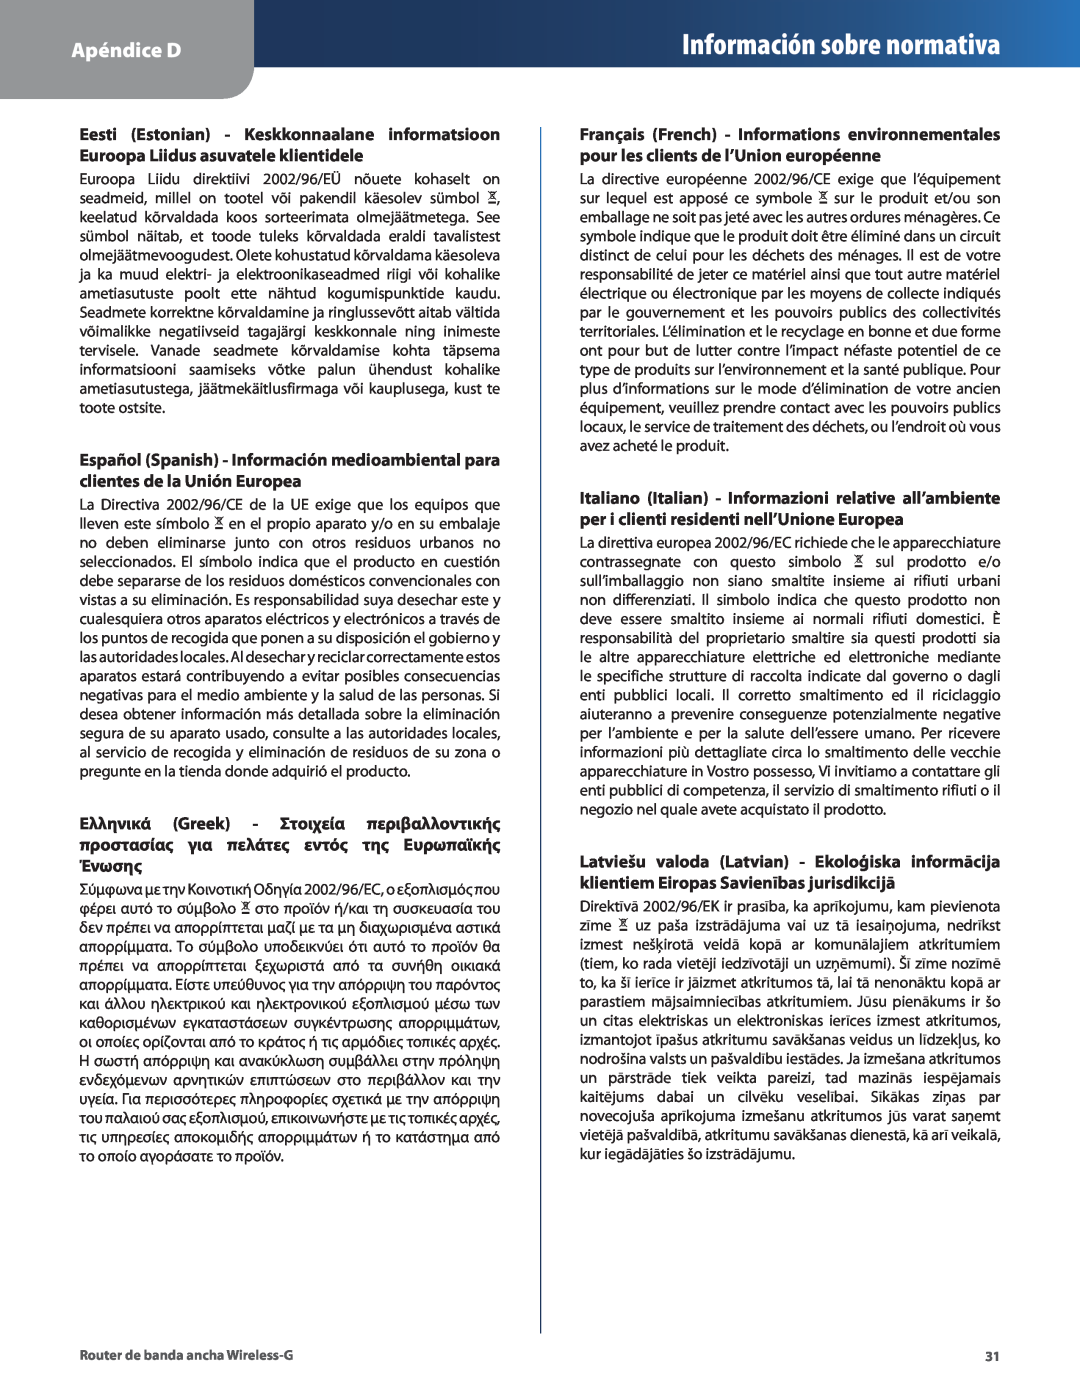 Cisco Systems WRT54G2 manual Información sobre normativa, Apéndice D 